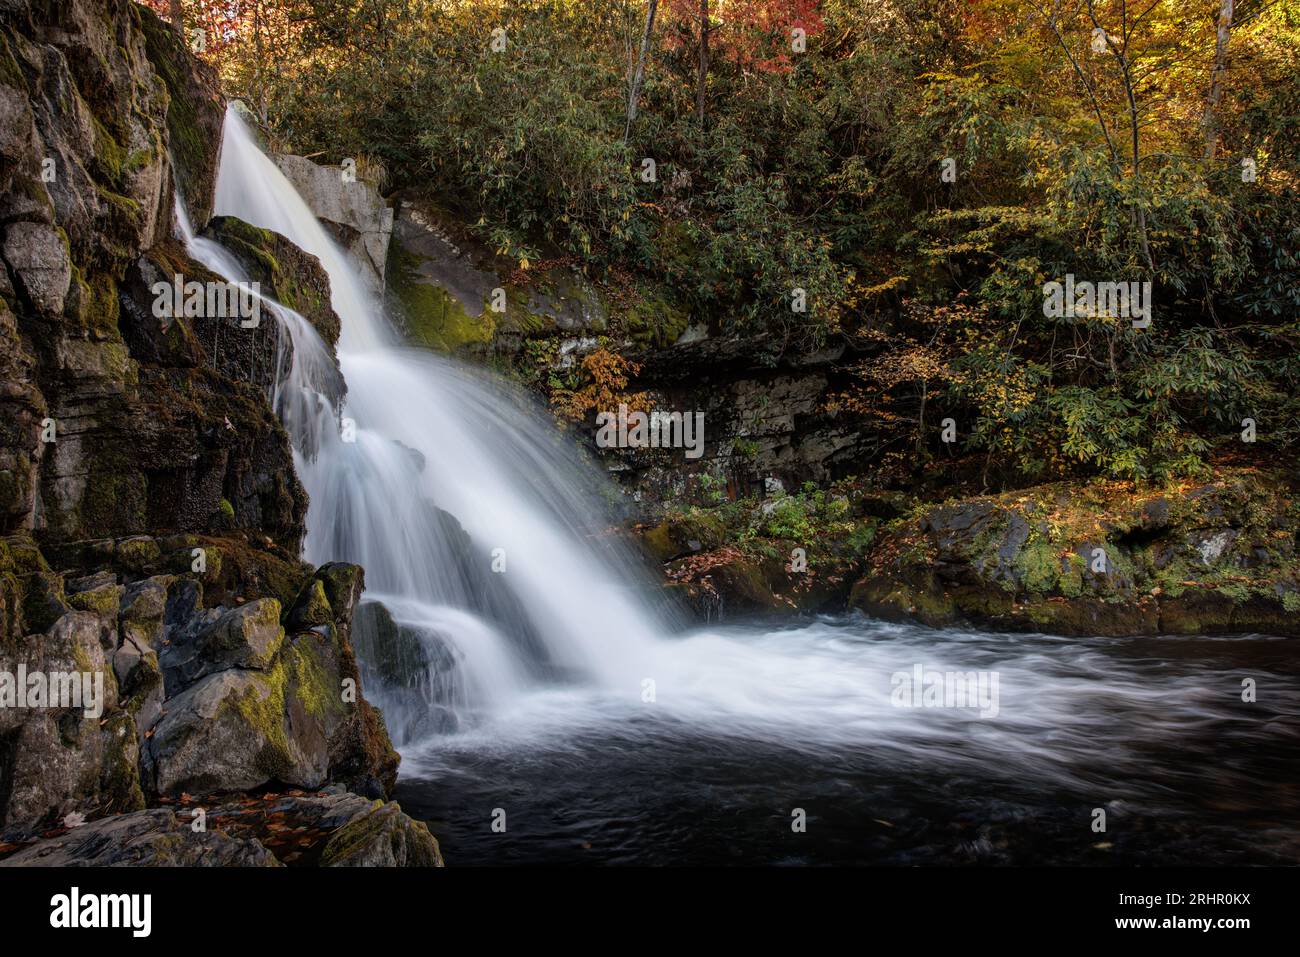 Herbstlaub färbt die Gegend um Abrams Falls in der Nähe der Cades Cove im Great Smoky Mountains National Park. Stockfoto